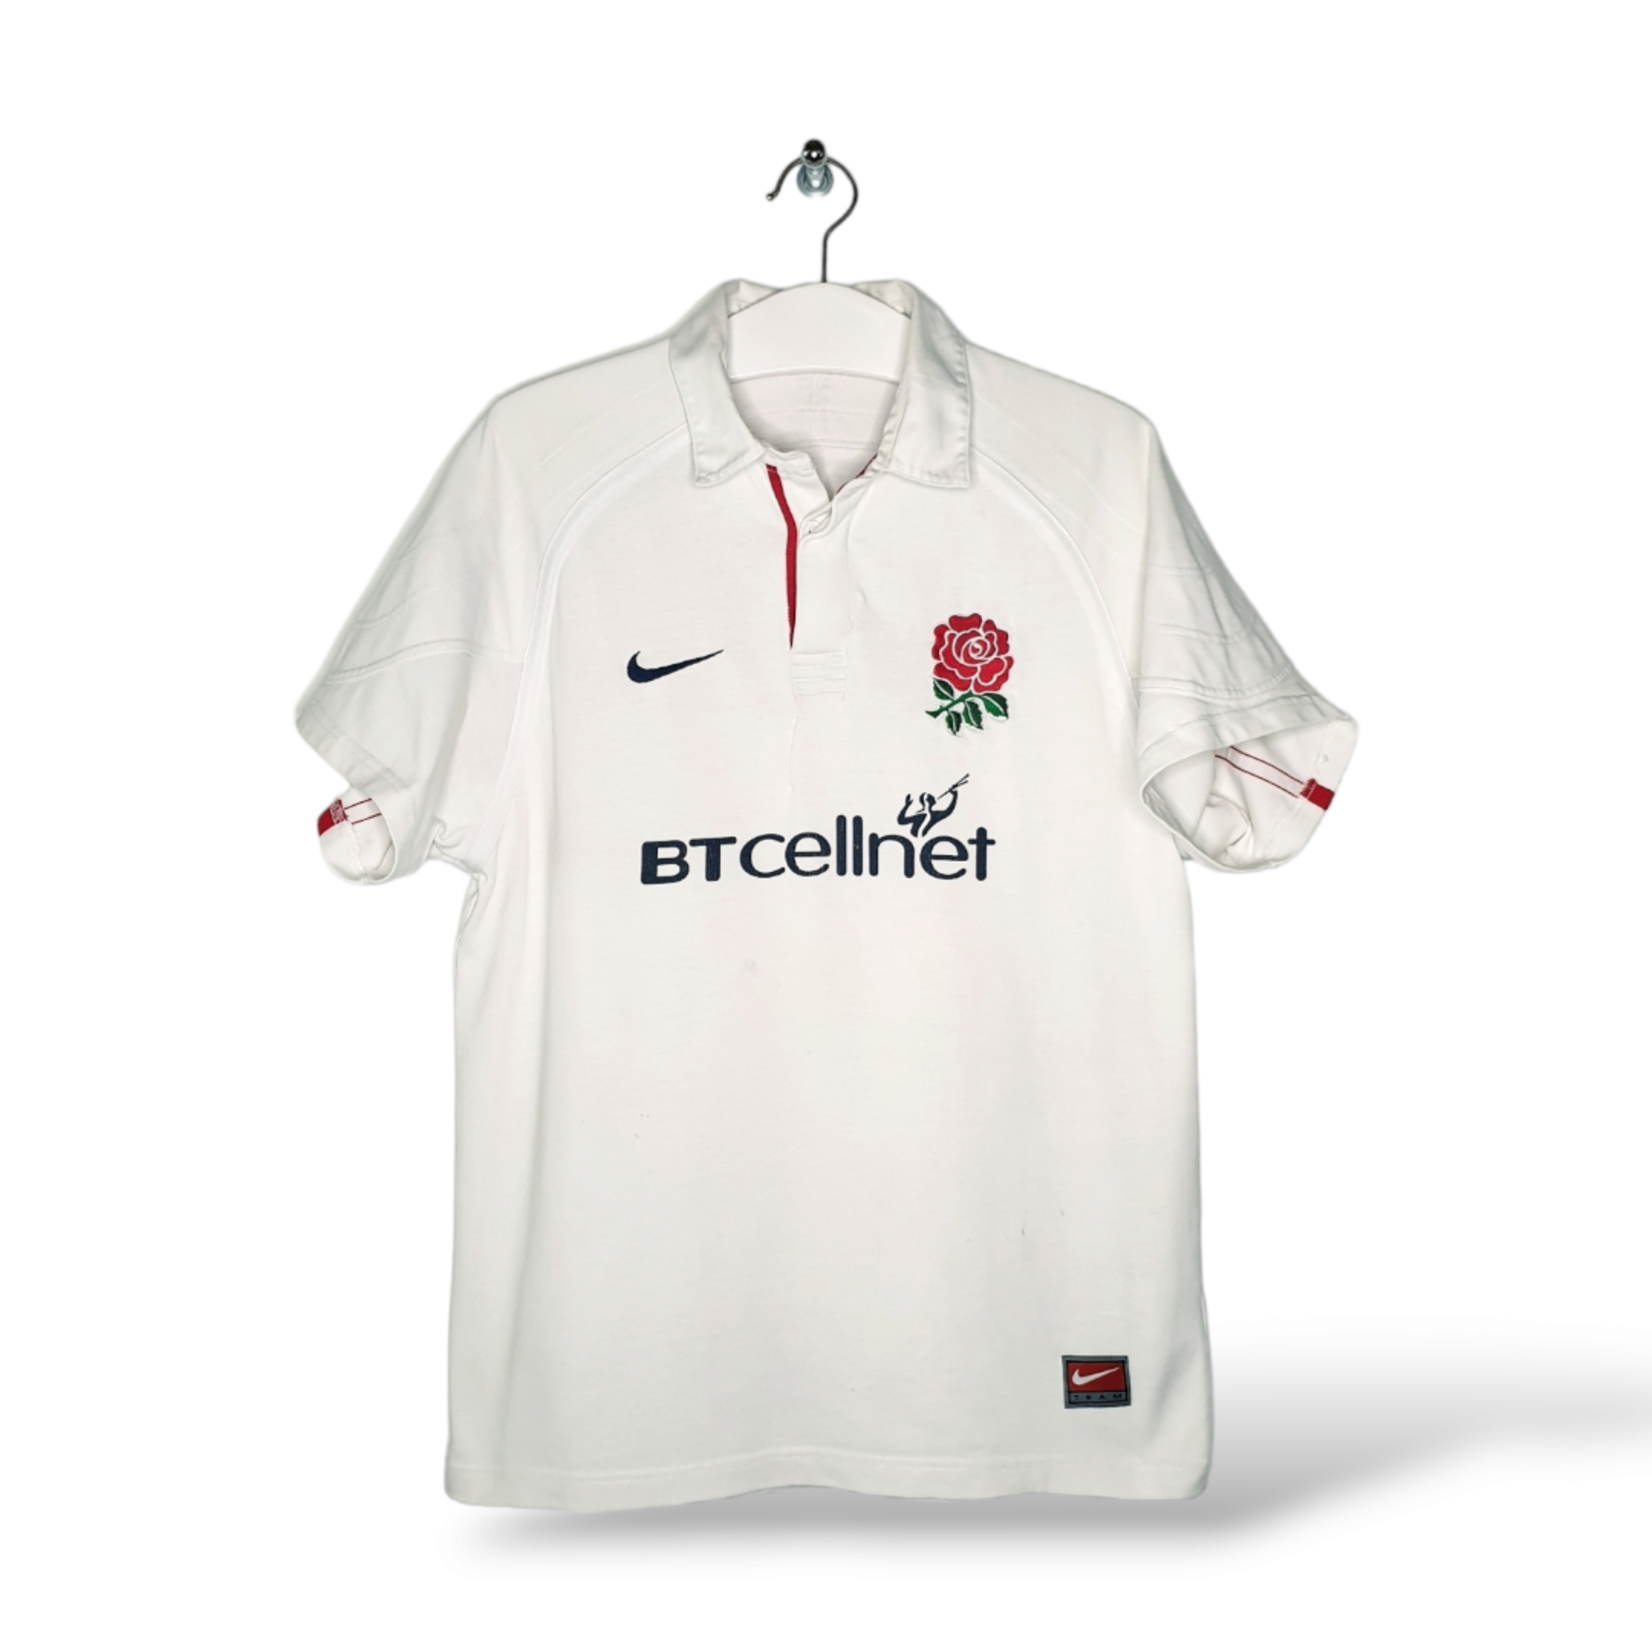 Nike Origineel Nike vintage rugby shirt Engeland 2001